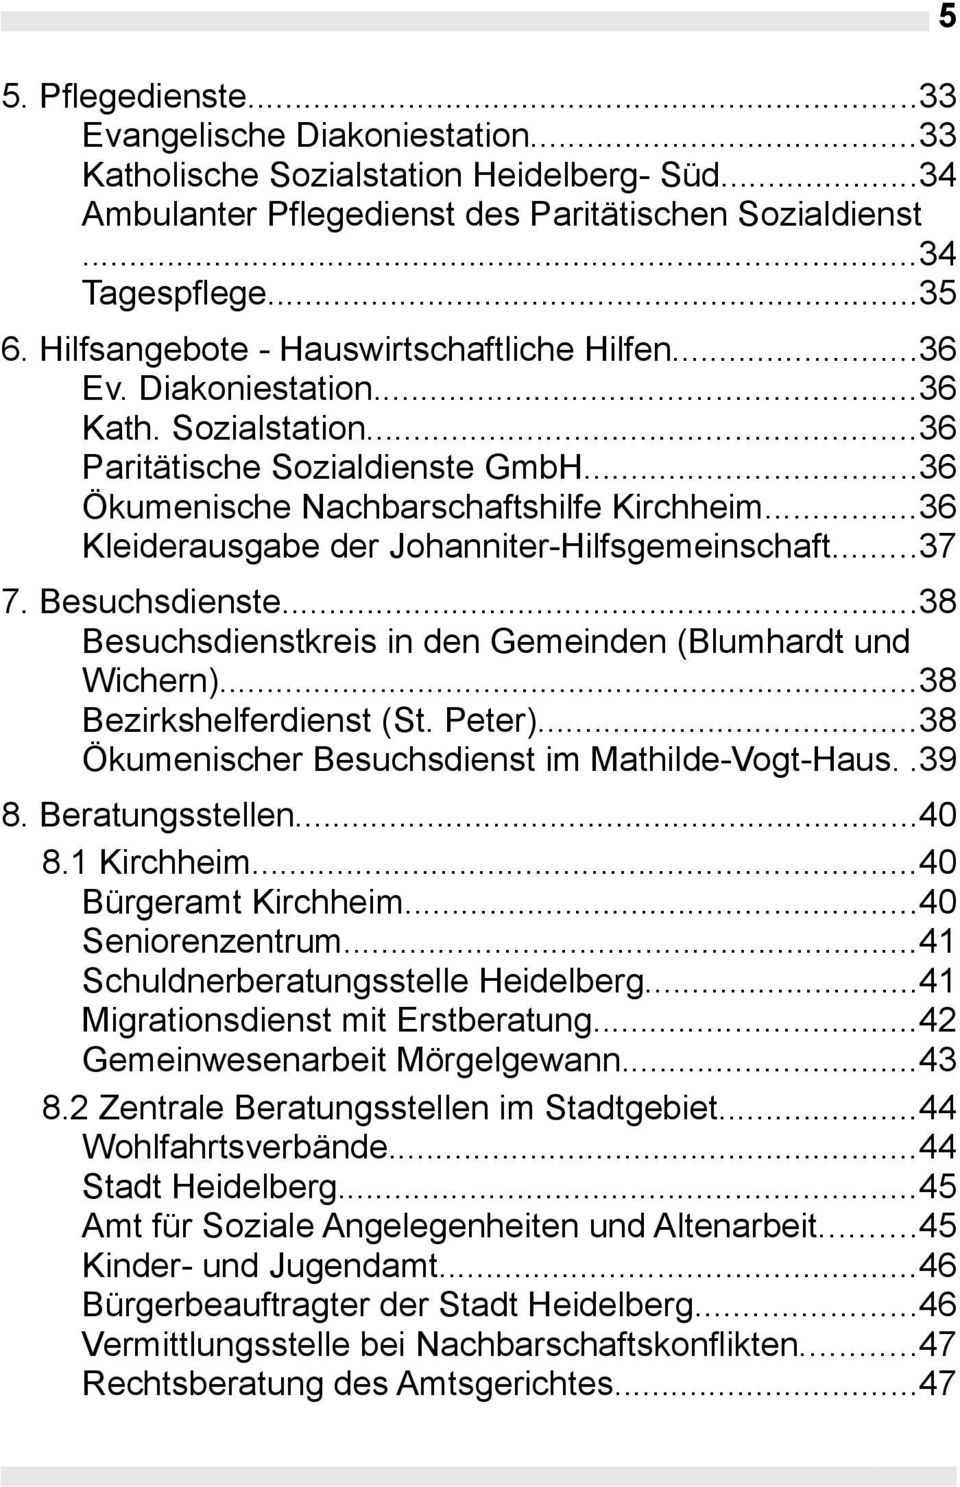 ..36 Kleiderausgabe der Johanniter-Hilfsgemeinschaft...37 7. Besuchsdienste...38 Besuchsdienstkreis in den Gemeinden (Blumhardt und Wichern)...38 Bezirkshelferdienst (St. Peter).